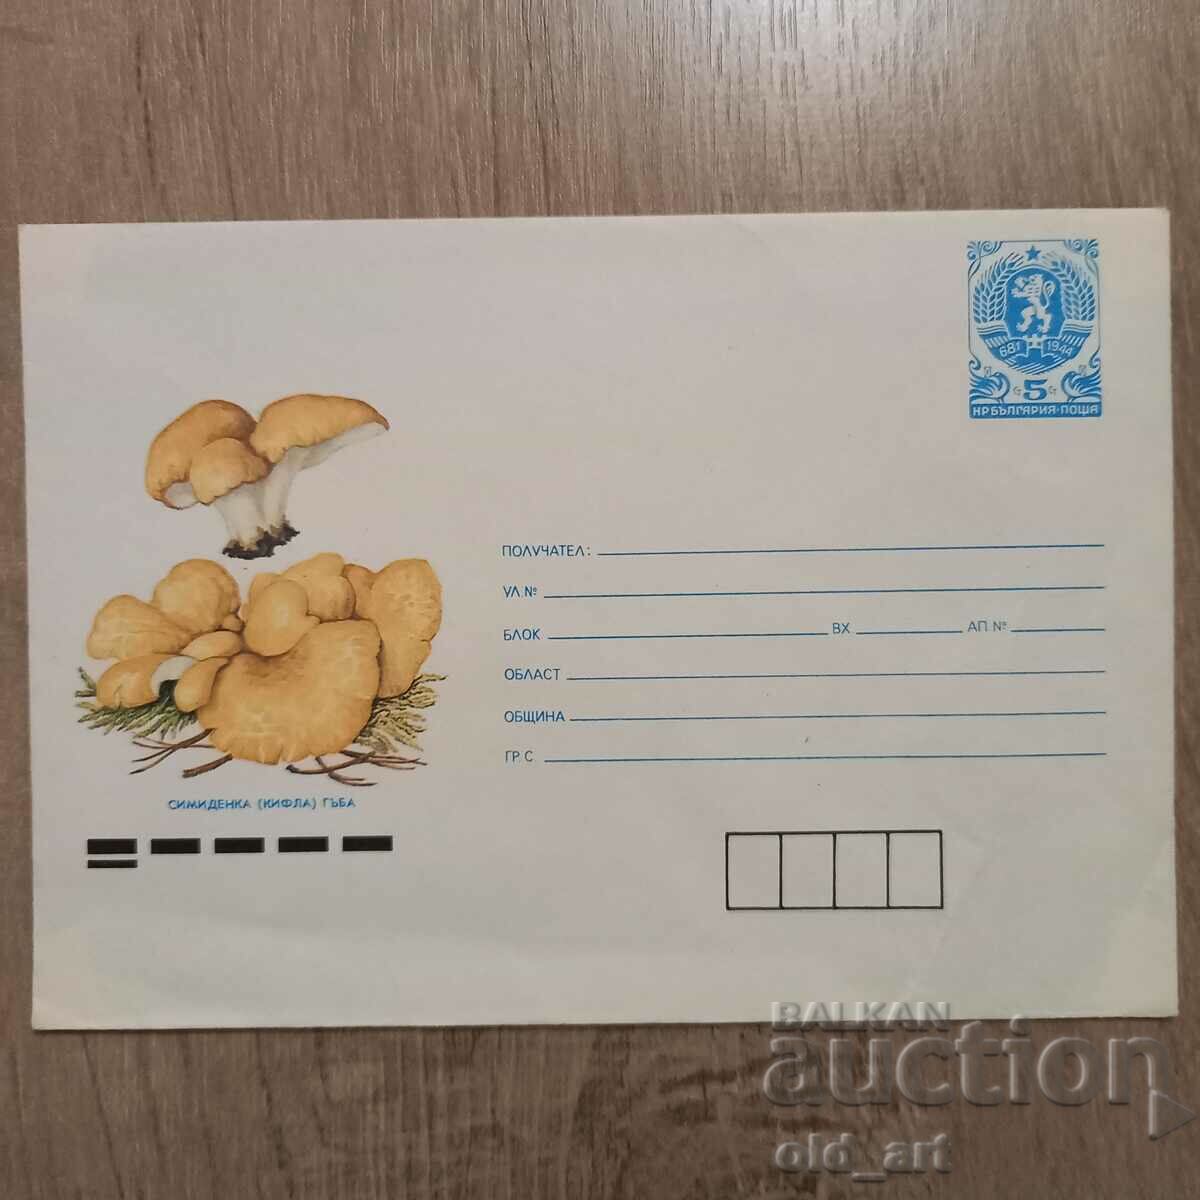 Ταχυδρομικός φάκελος - Simidenka / κουλούρι / μανιτάρι